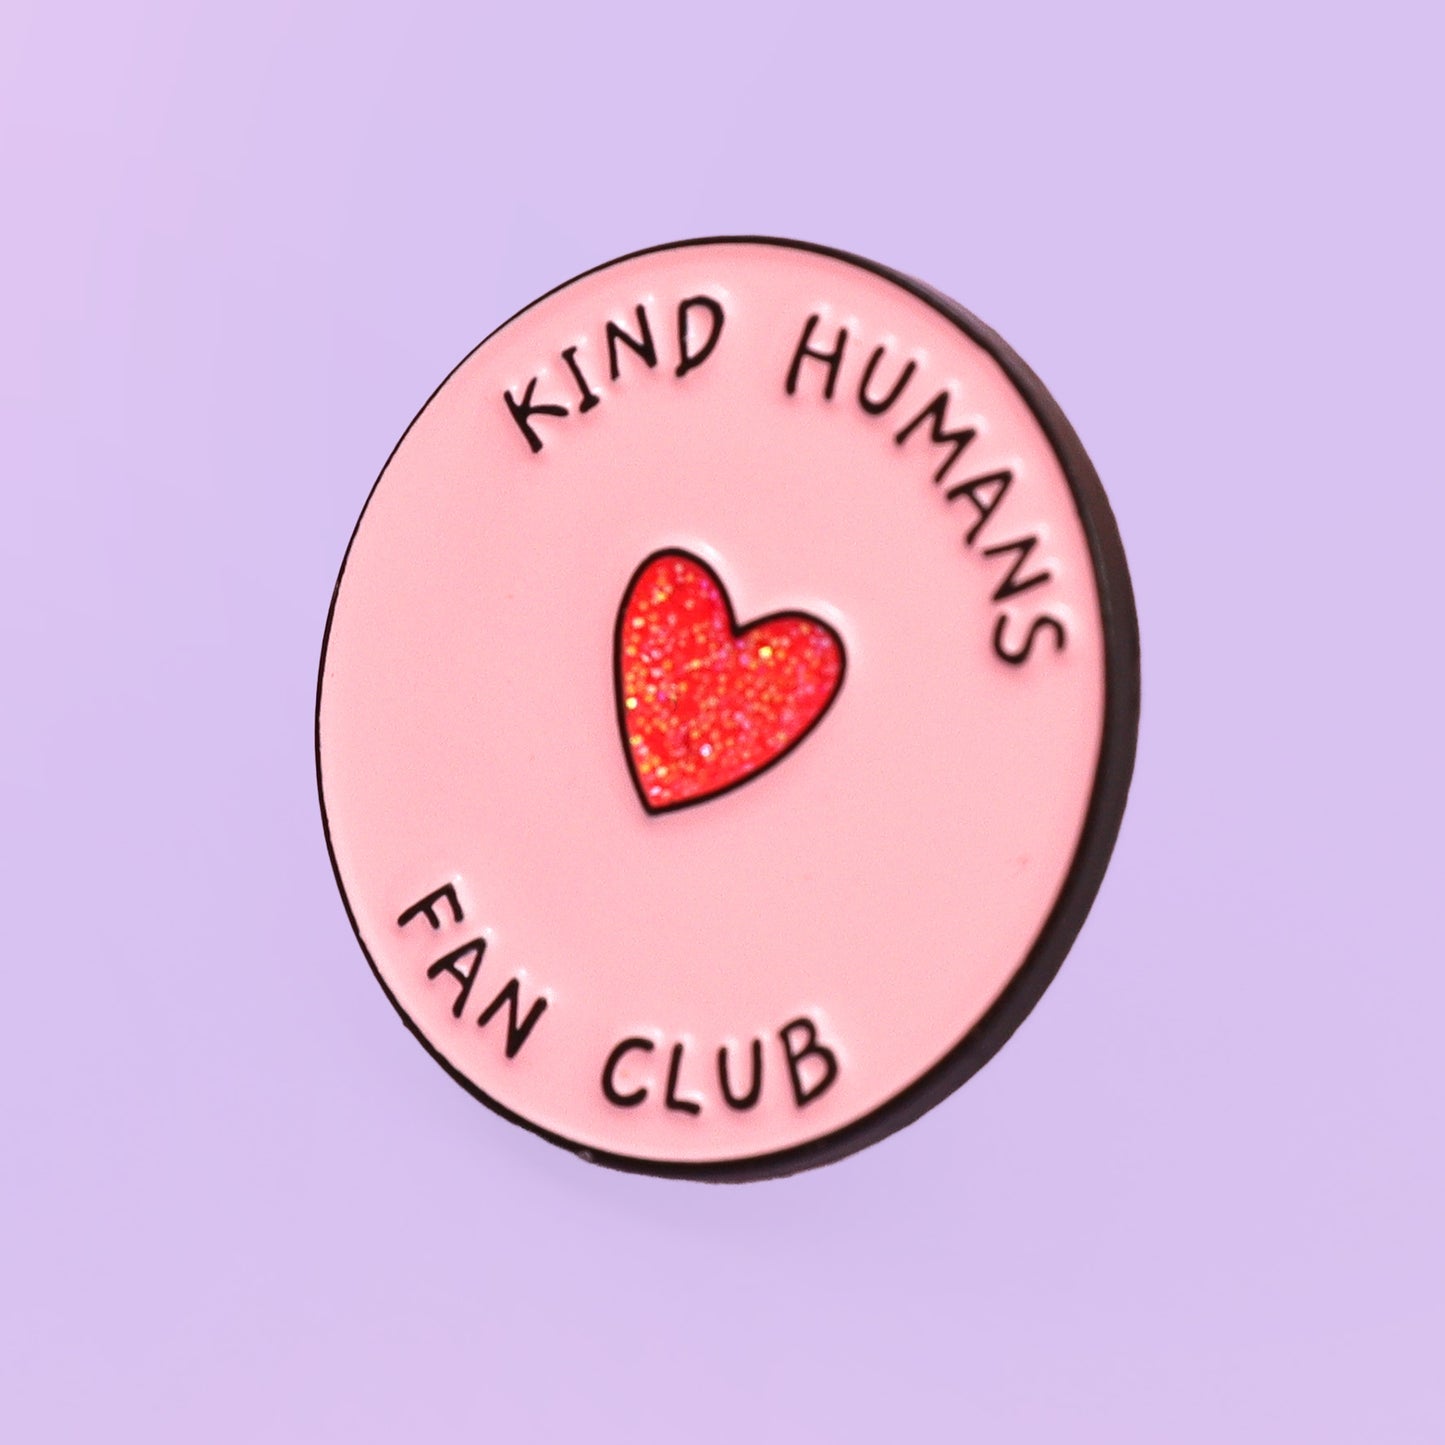 Kind humans fan club enamel pin